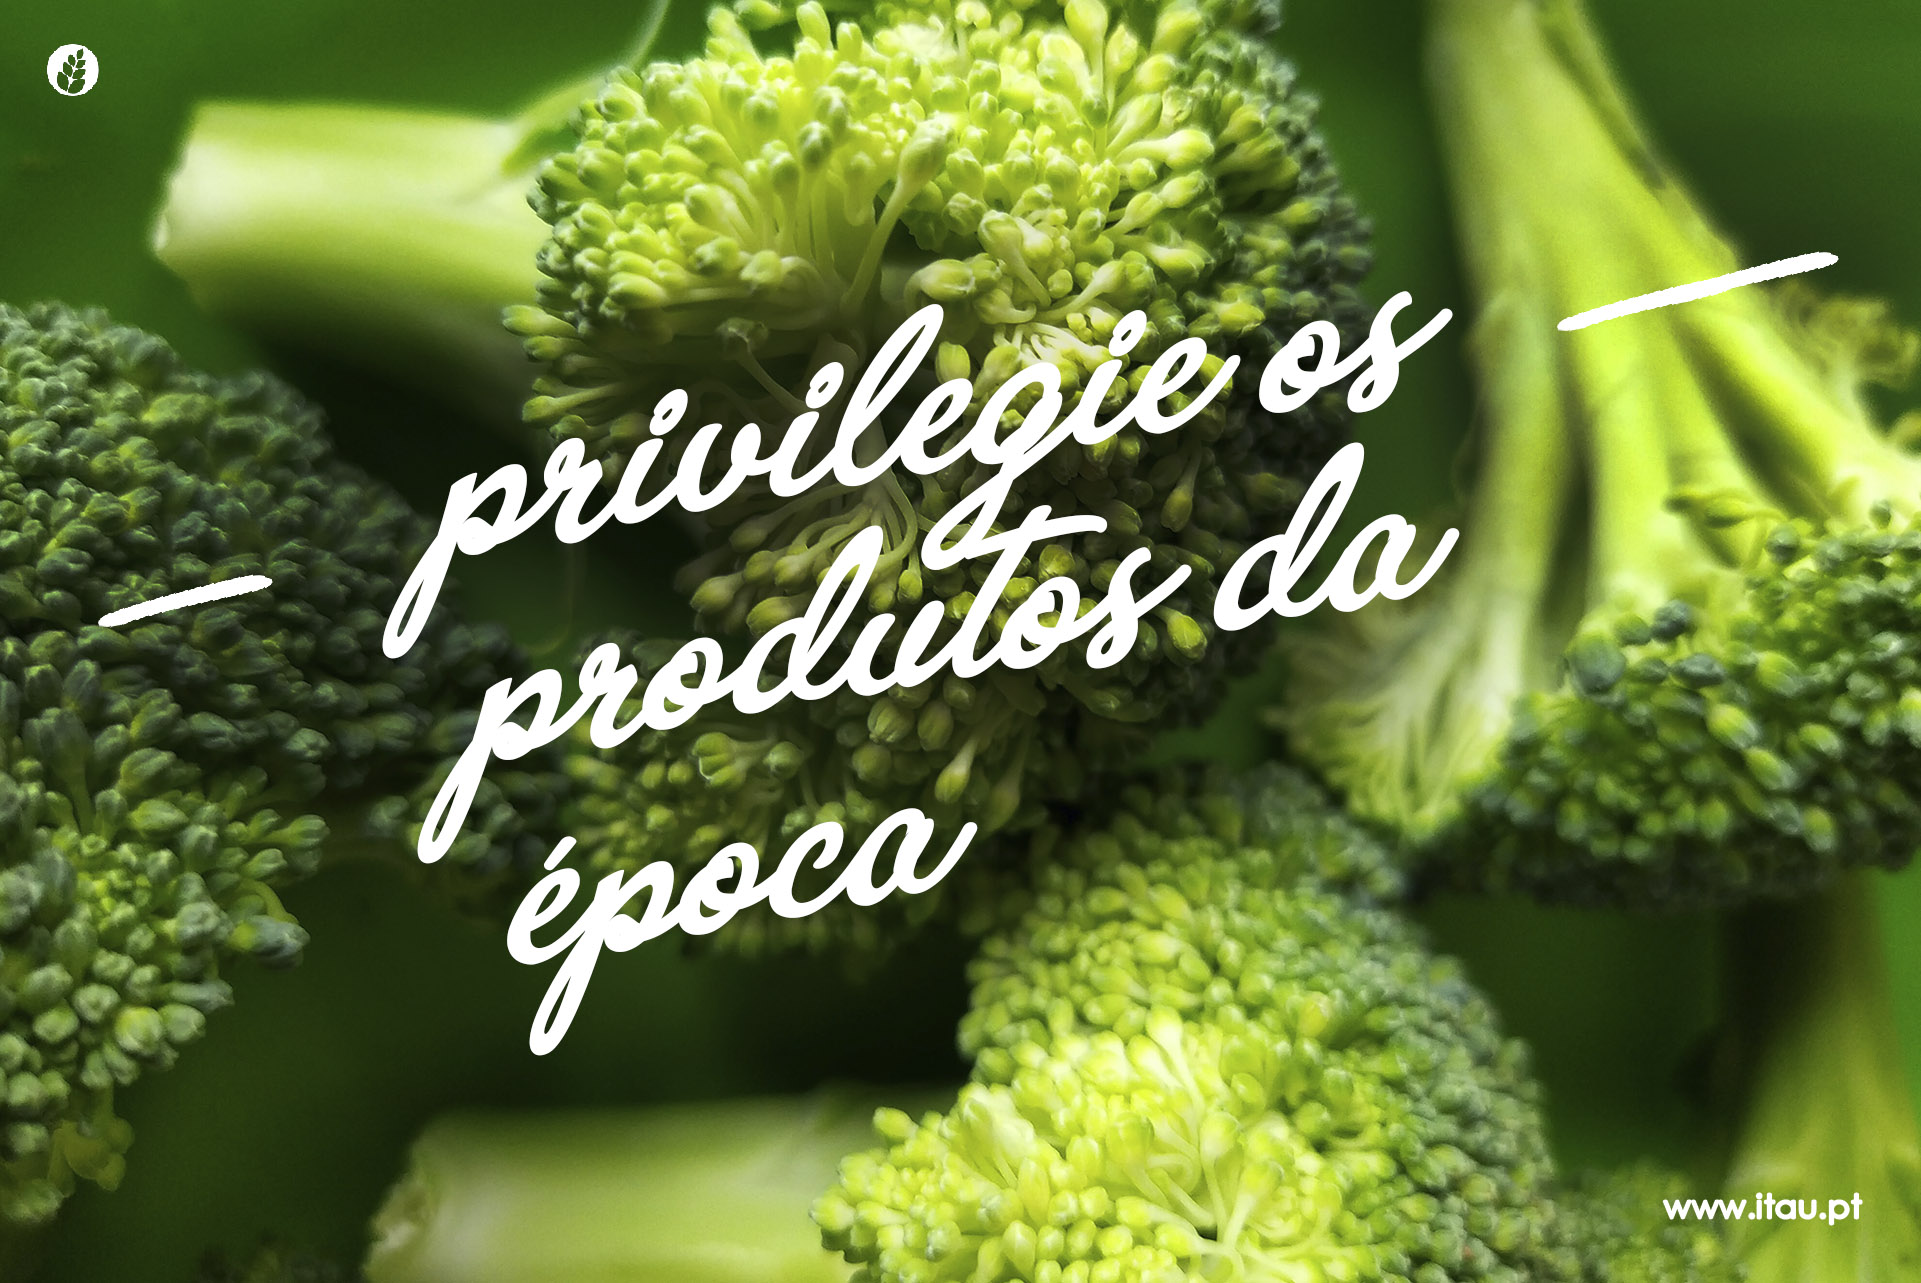 Privilegie os produtos da época – Brócolos